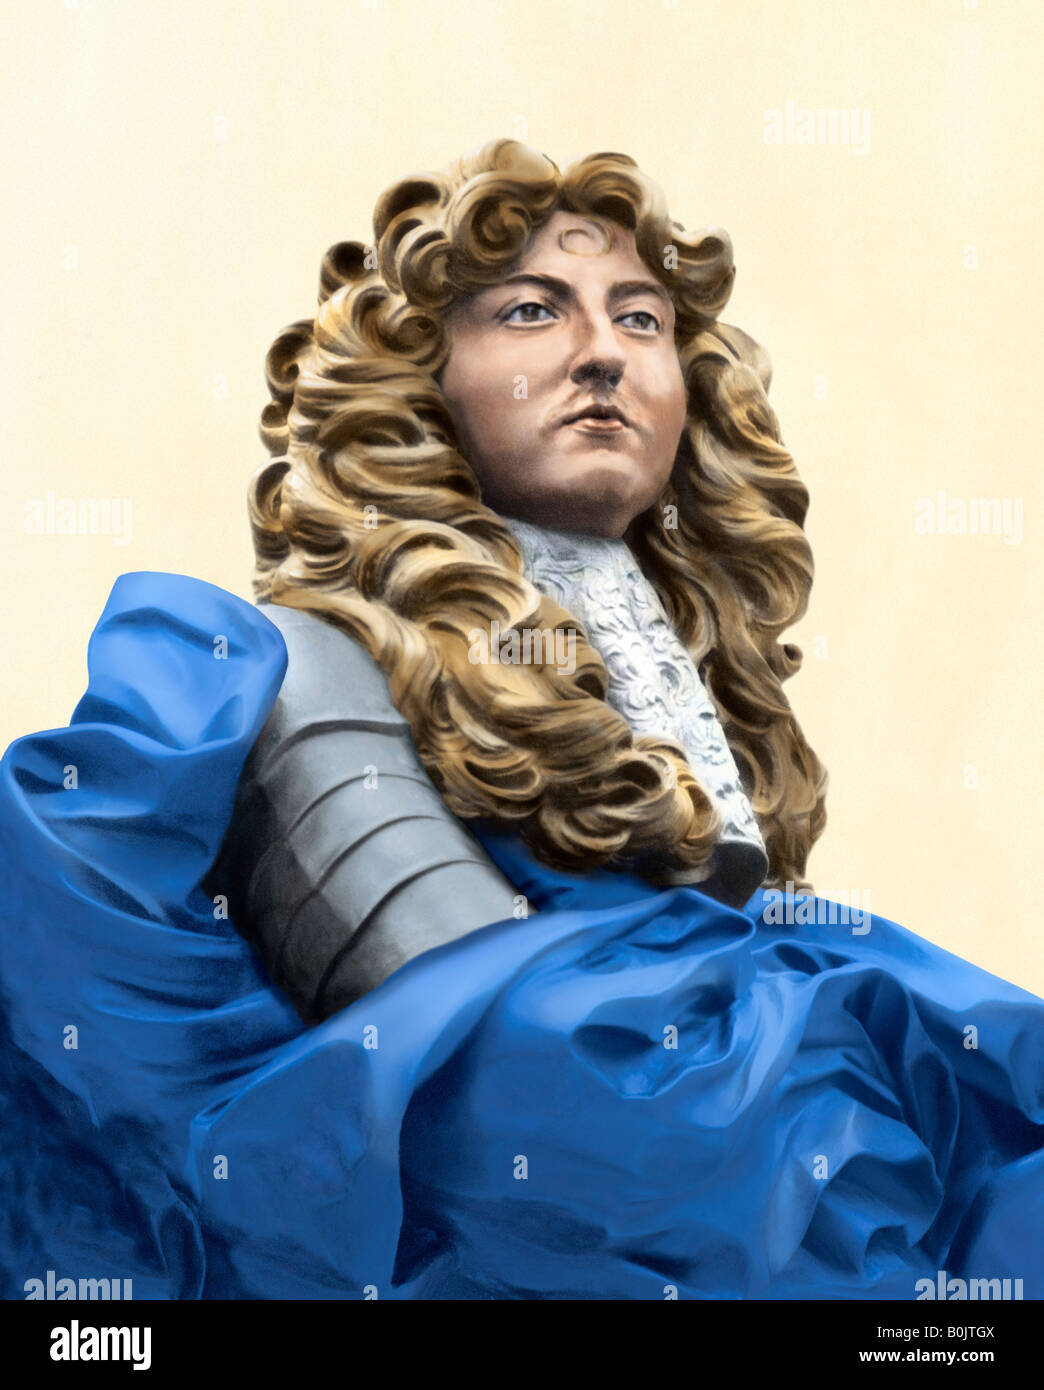 Busto del rey francés Luis XIV en el distrito histórico de la ciudad de Quebec en Canadá. Color digitalmente fotografía de una estatua Foto de stock